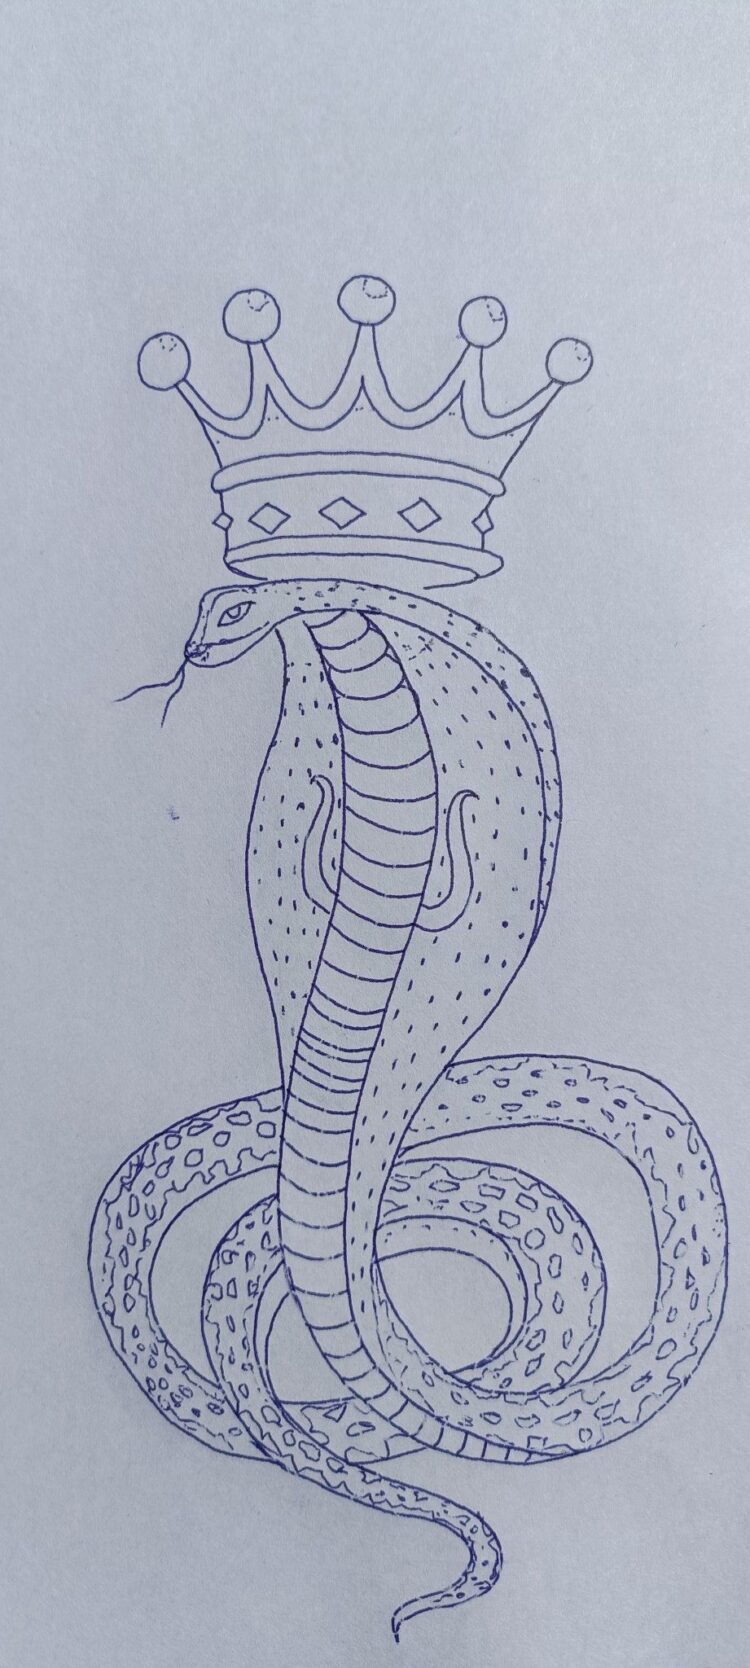 Goga Maharaj Tattoo Stensil Goga Maharaj Tattoo With Crown